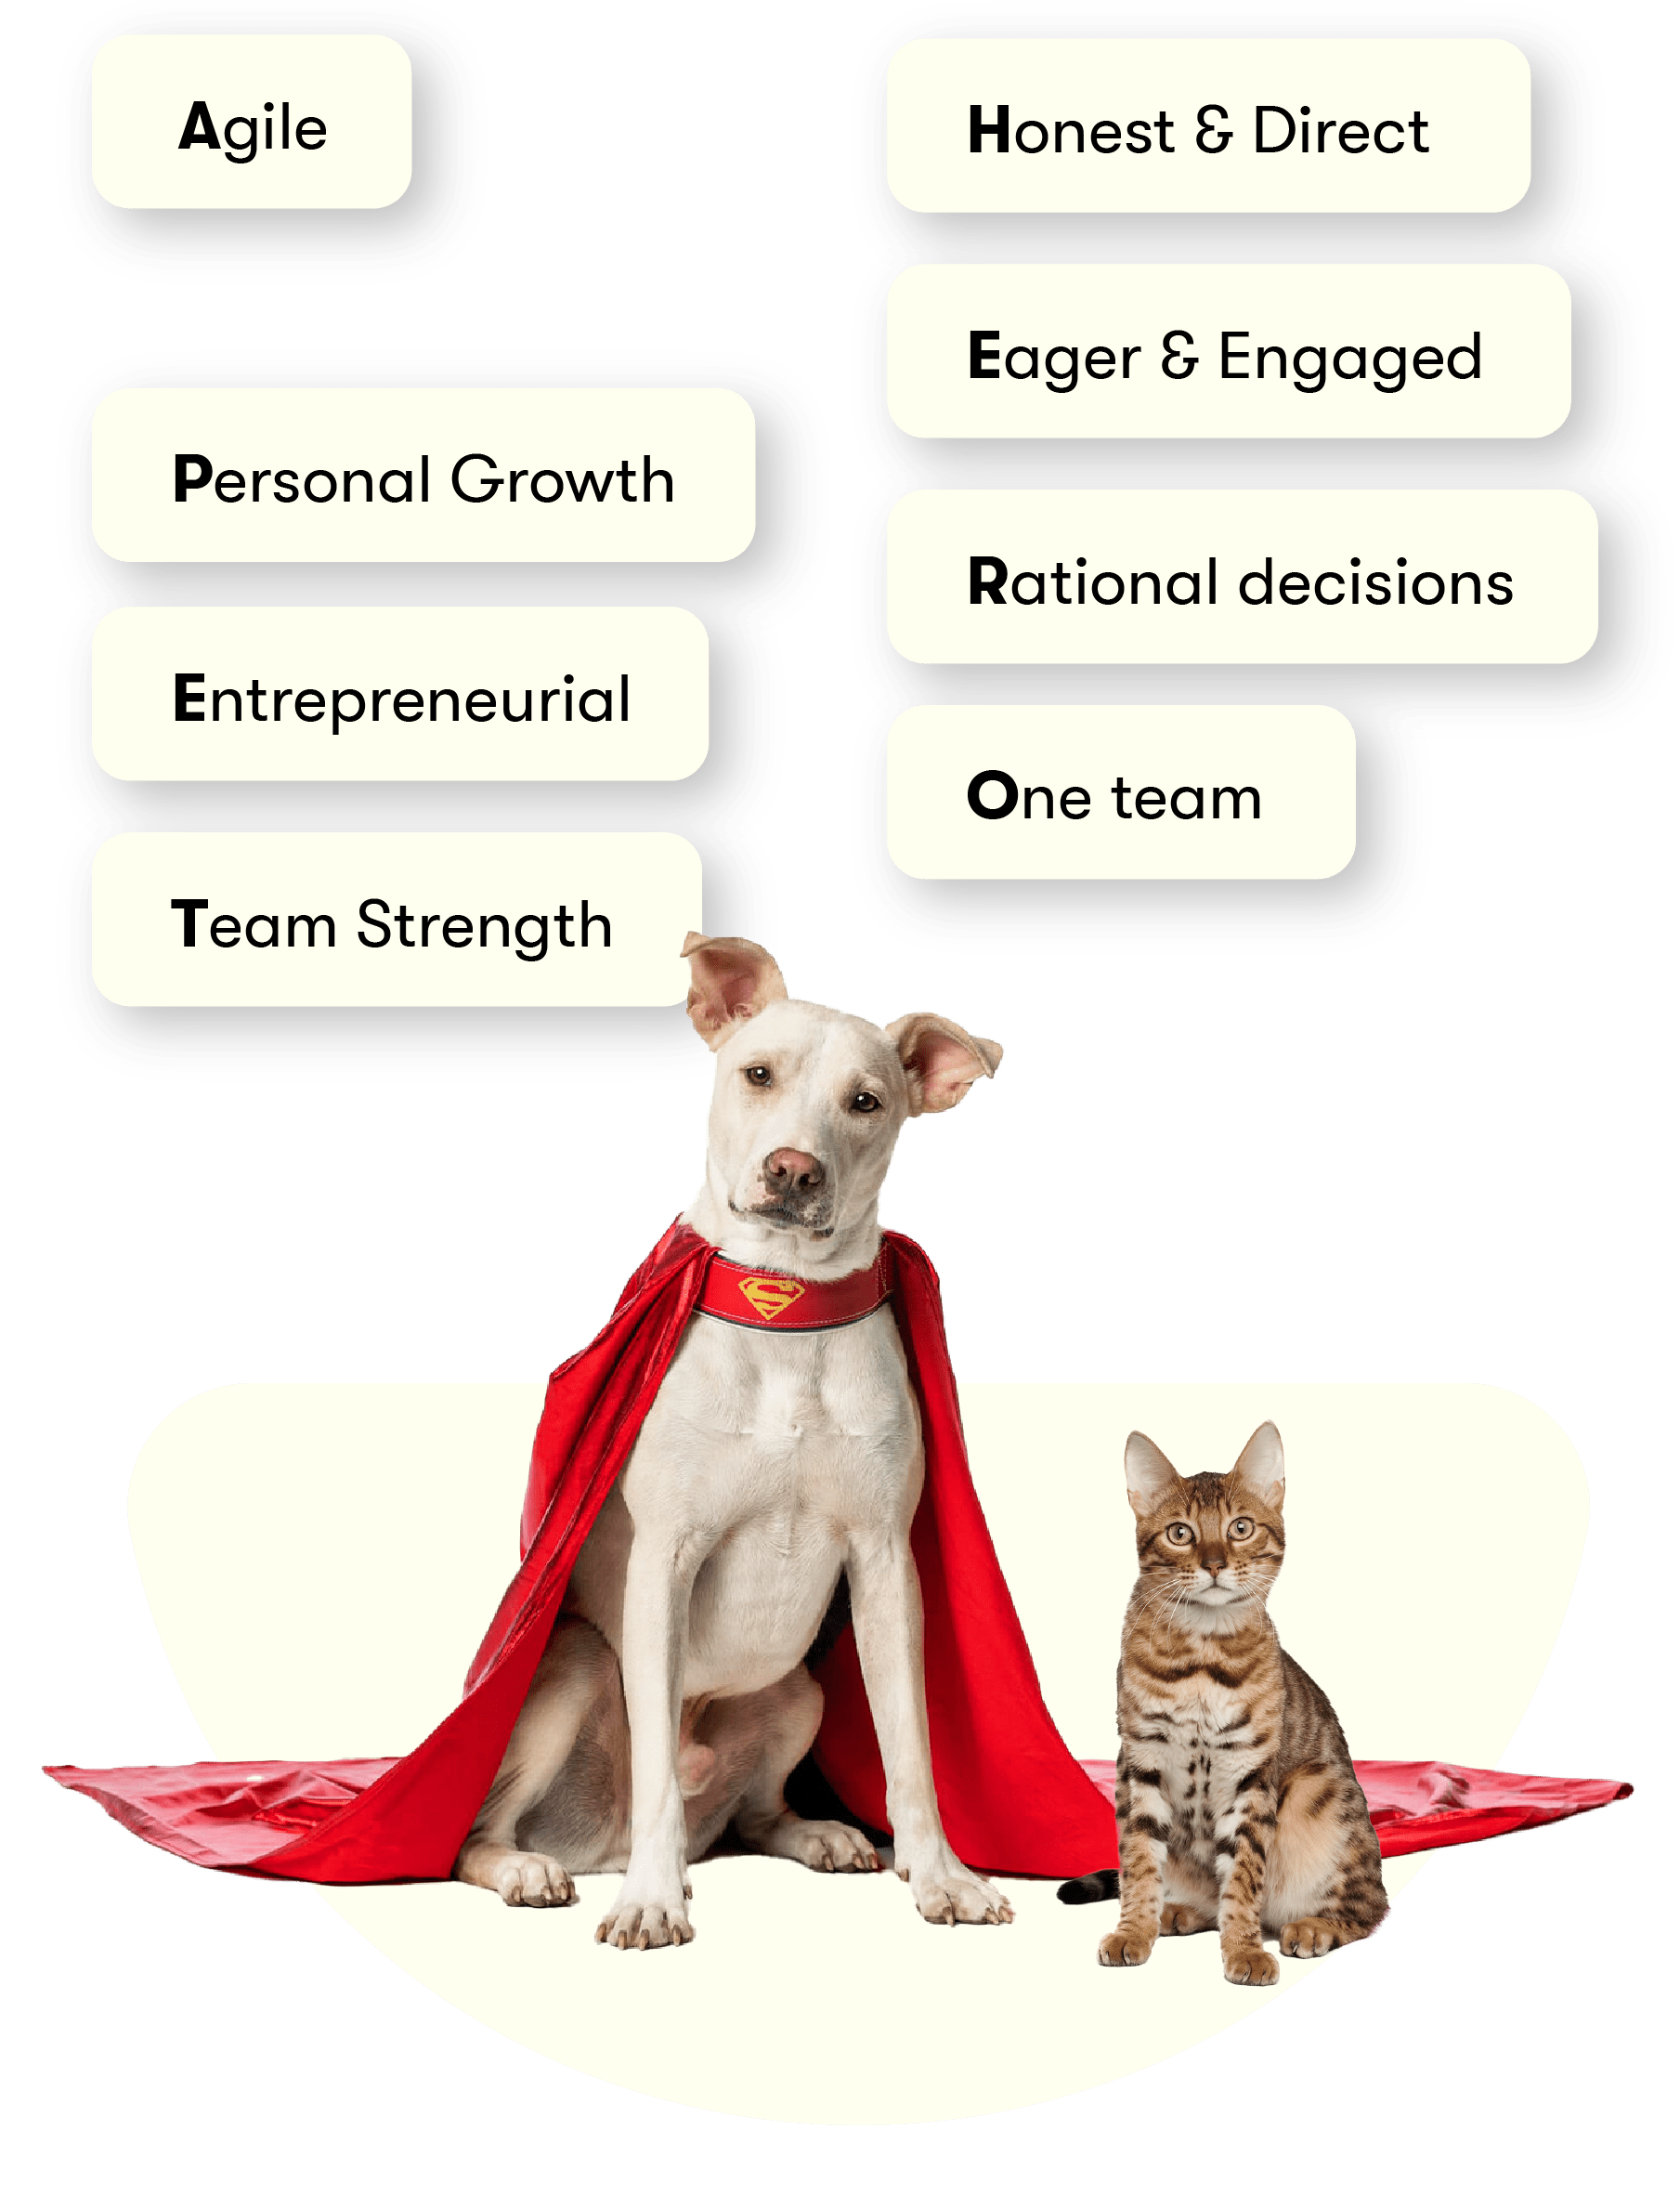 Hond en kat als superman afgebeeld